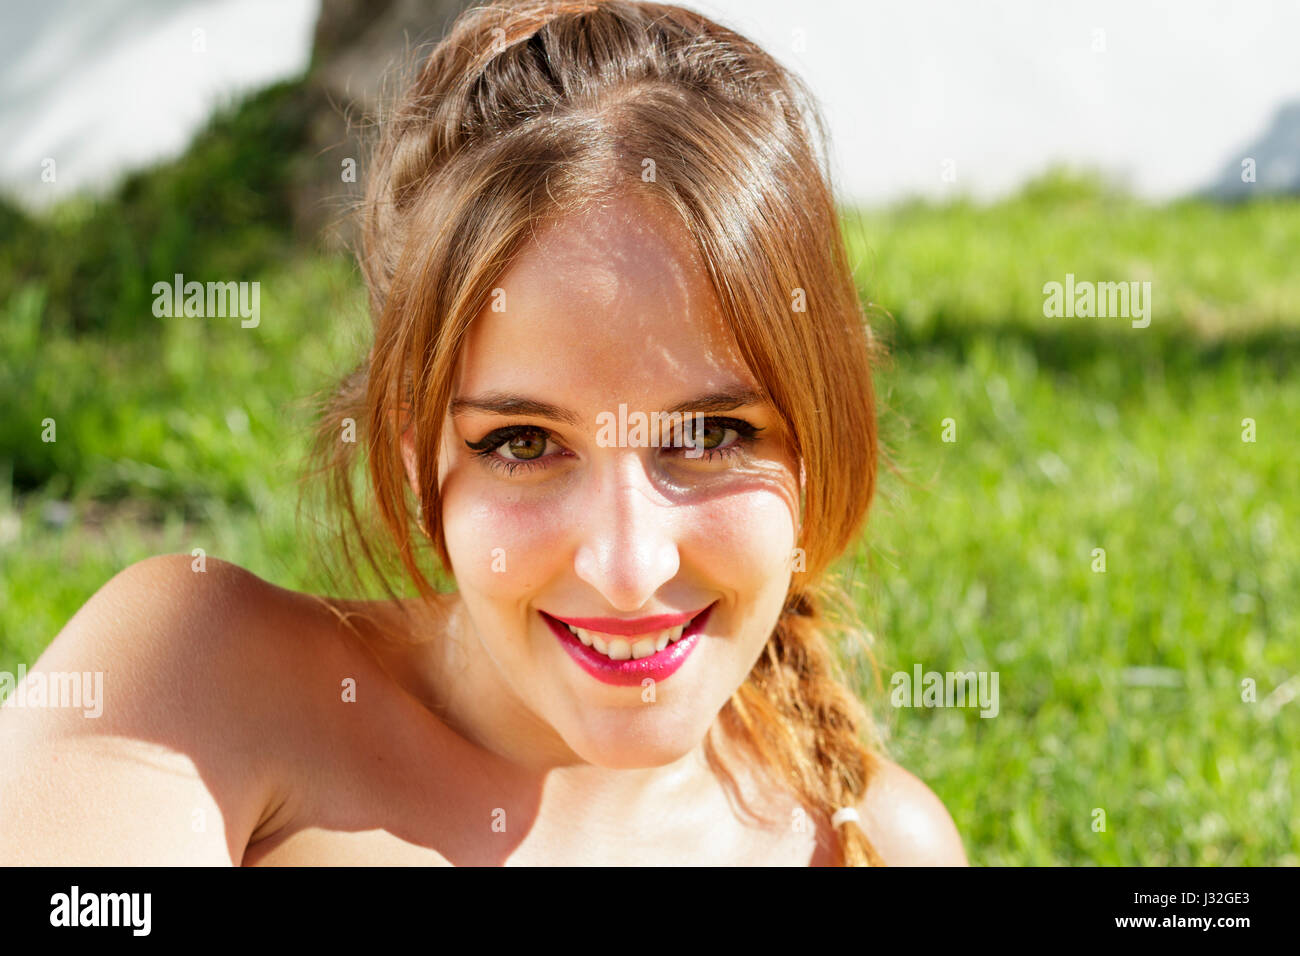 Bella donna con gli occhi verdi sorride alla fotocamera mentre è sdraiato sull'erba Foto Stock